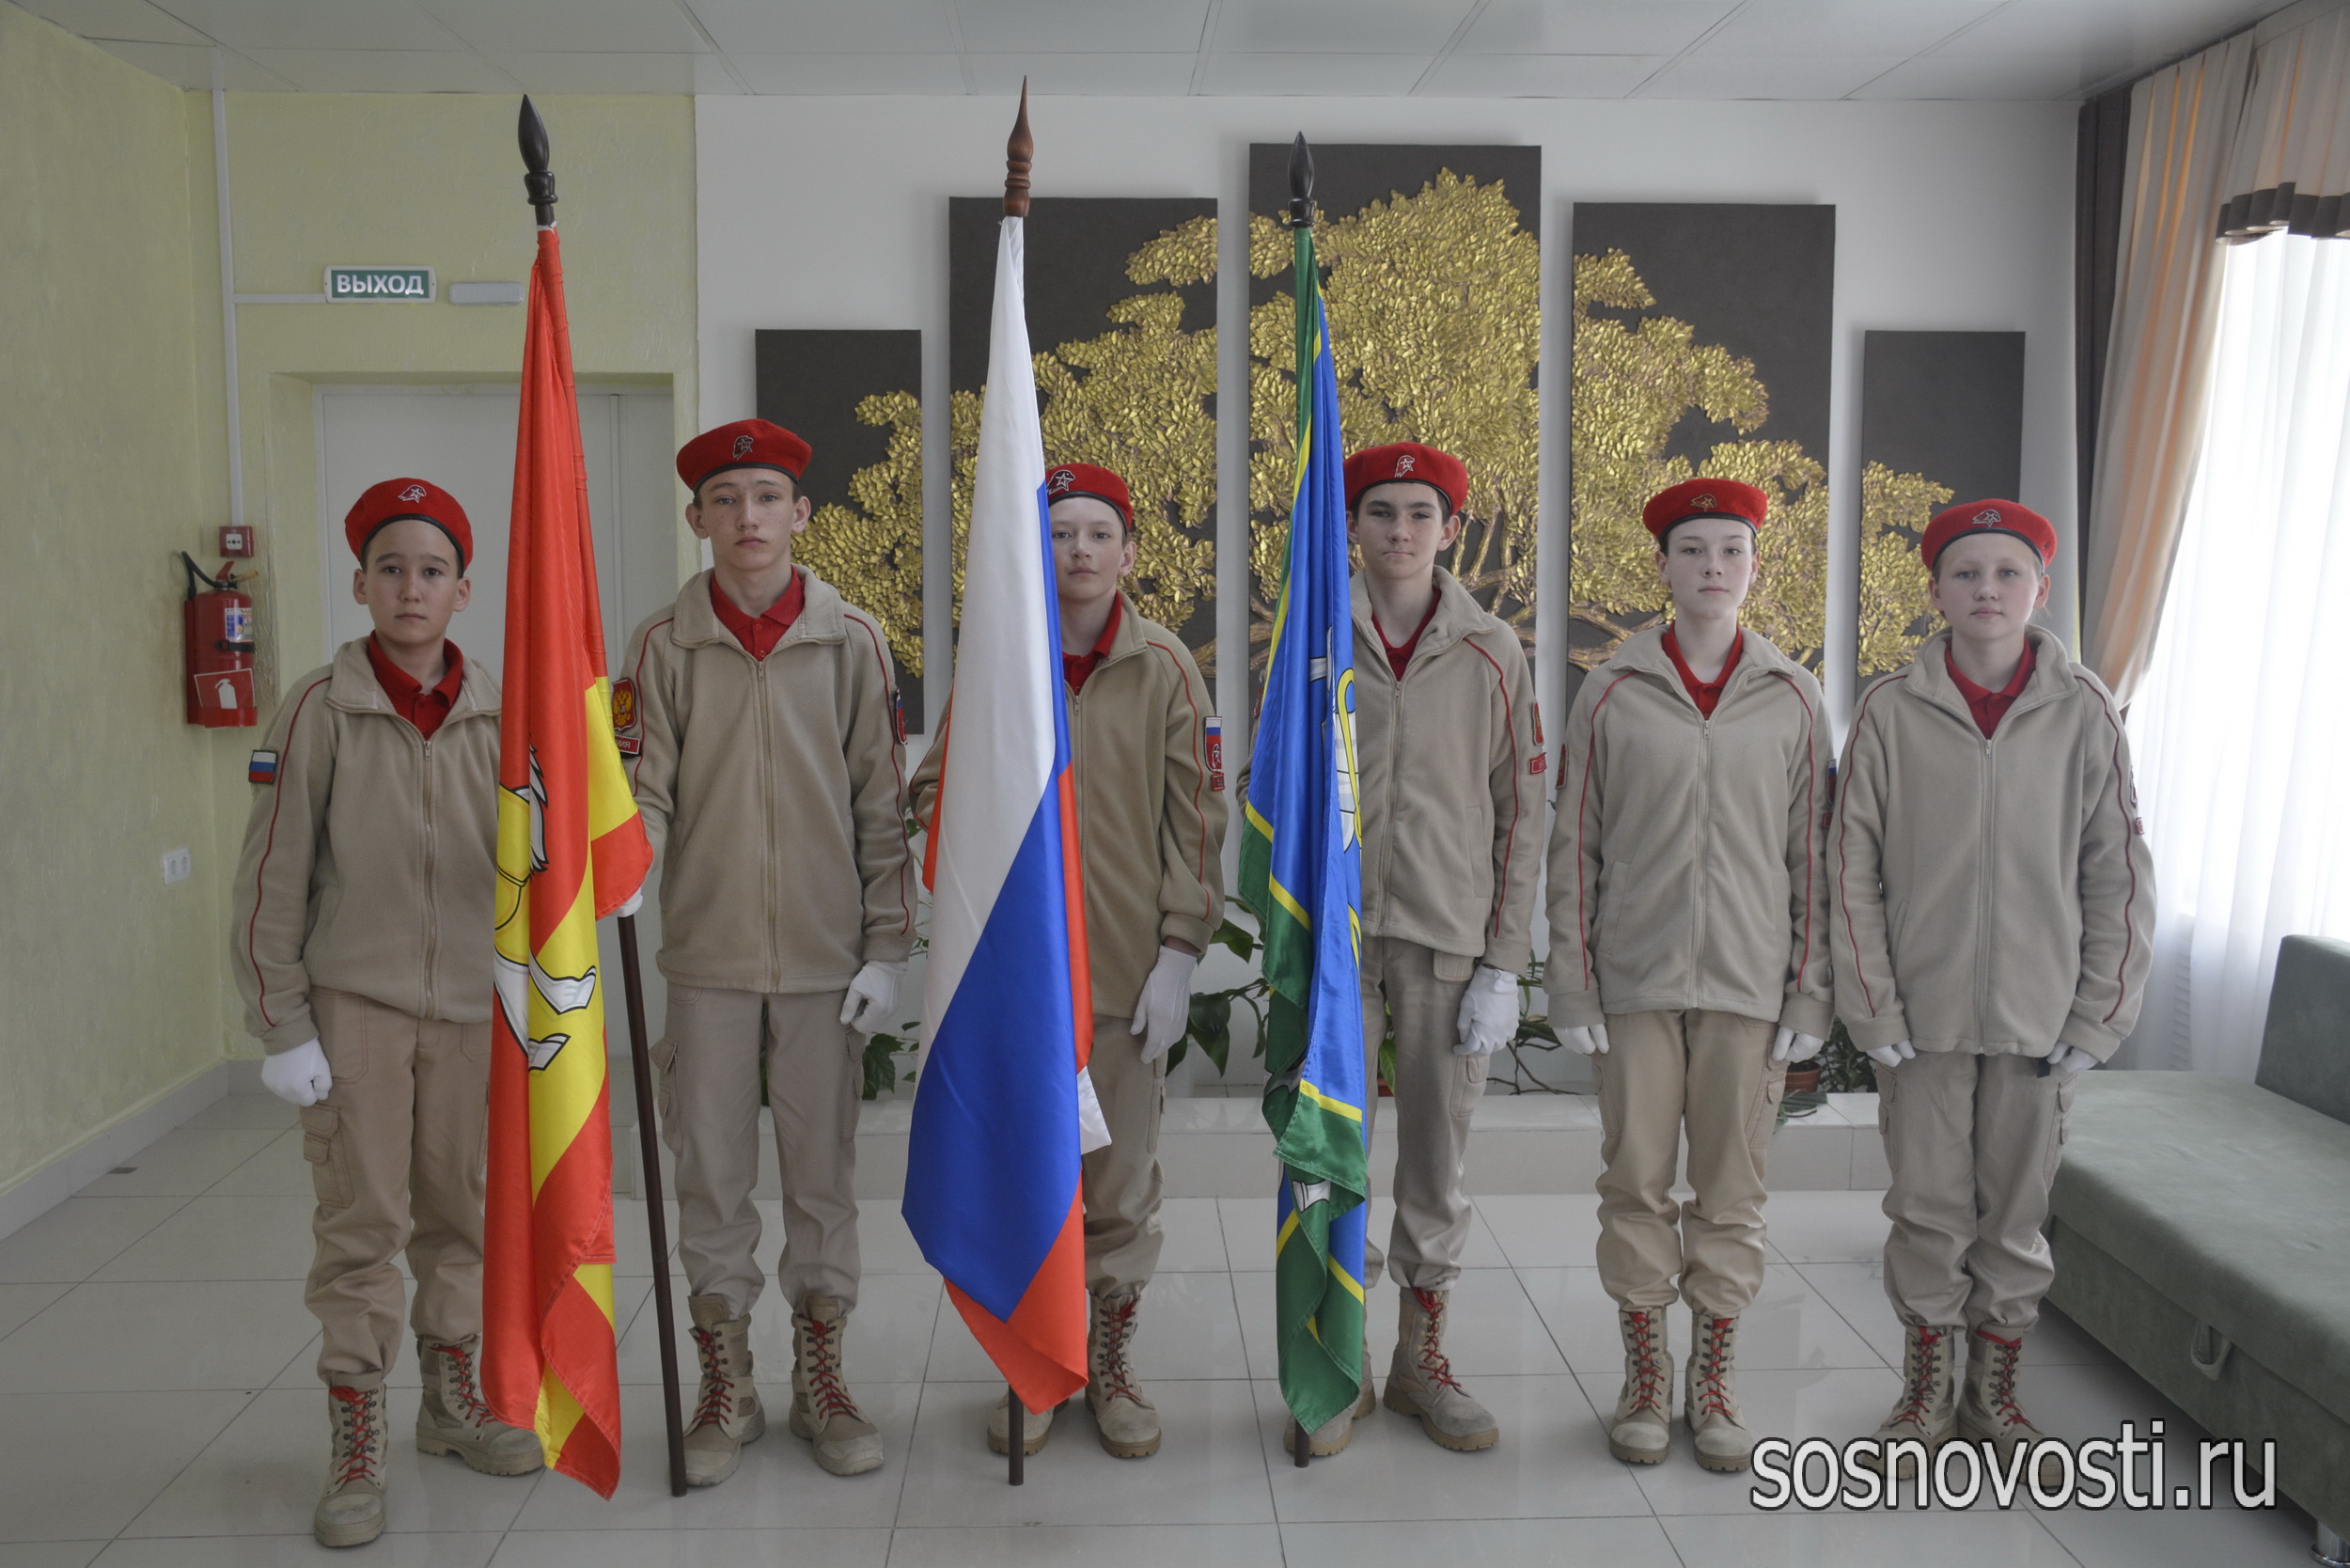 Парад достижений: в Сосновском районе наградили лучших учеников